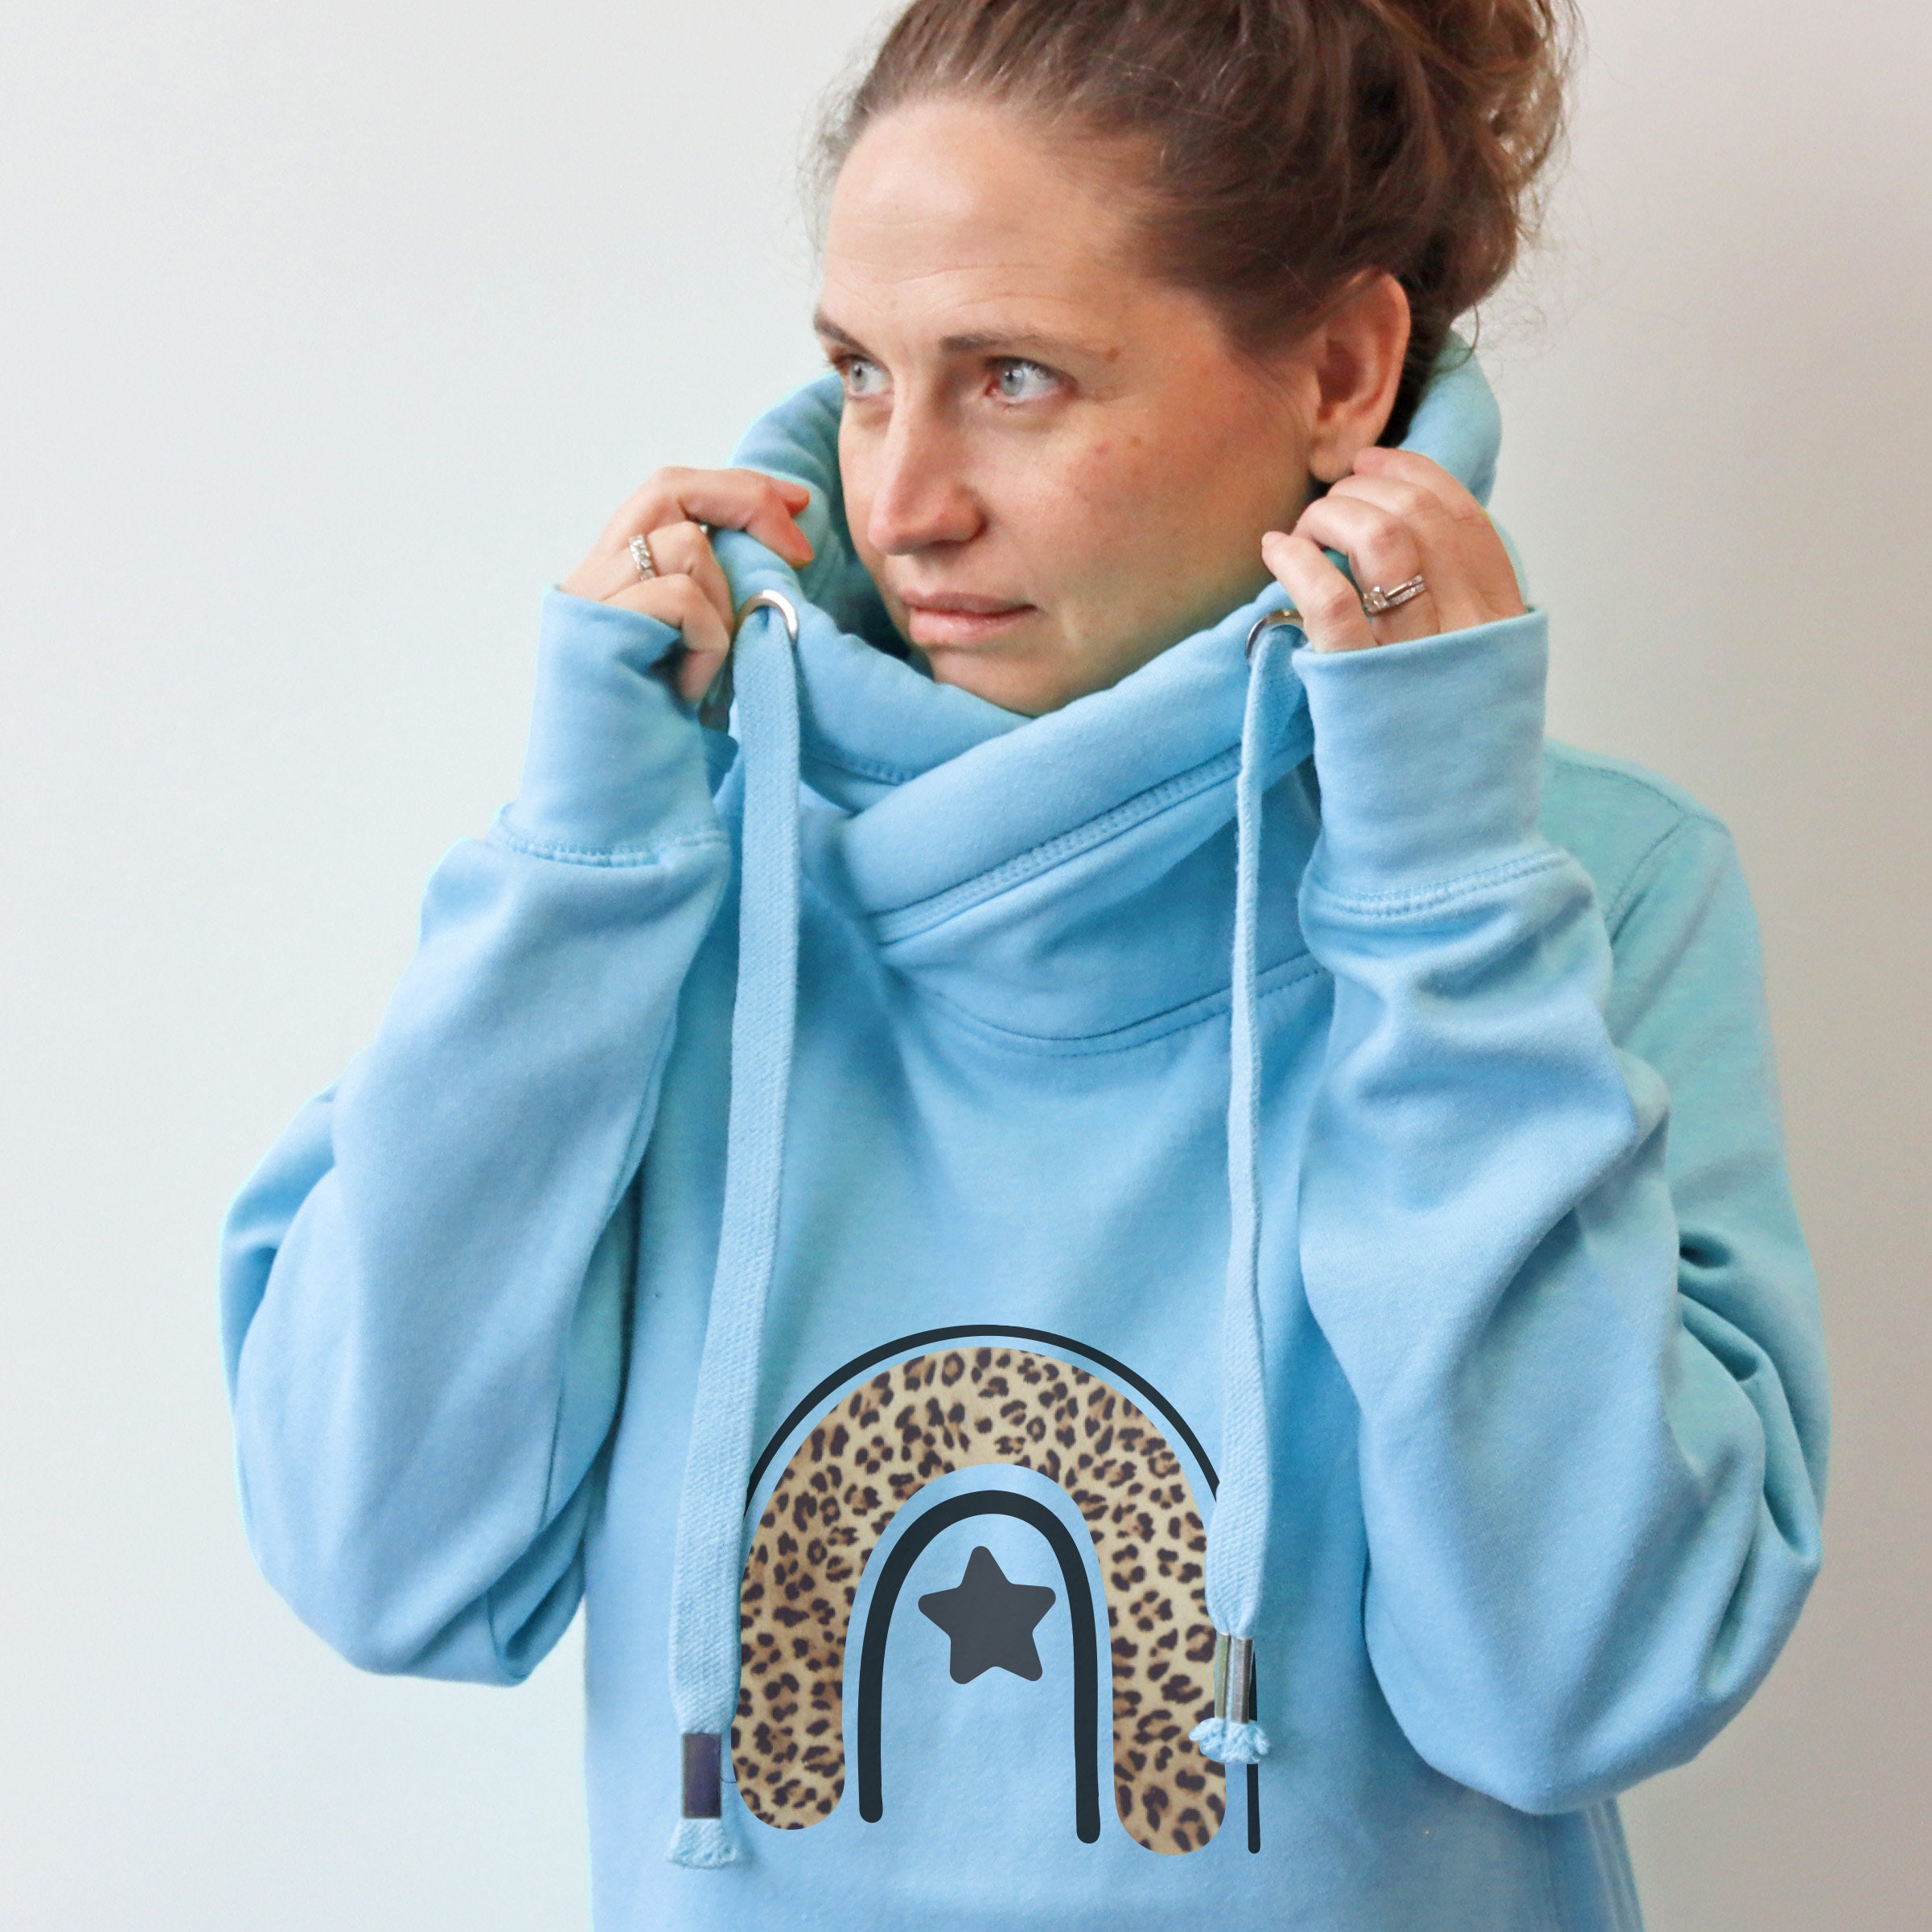 Cowl Neck Luxe Baby Blue Hoodie | Snuggly Blue Hoodie | Cowl Neck Chunky Hoodie | Tired Weekend Loungewear Hoodie | Leopard Print Design